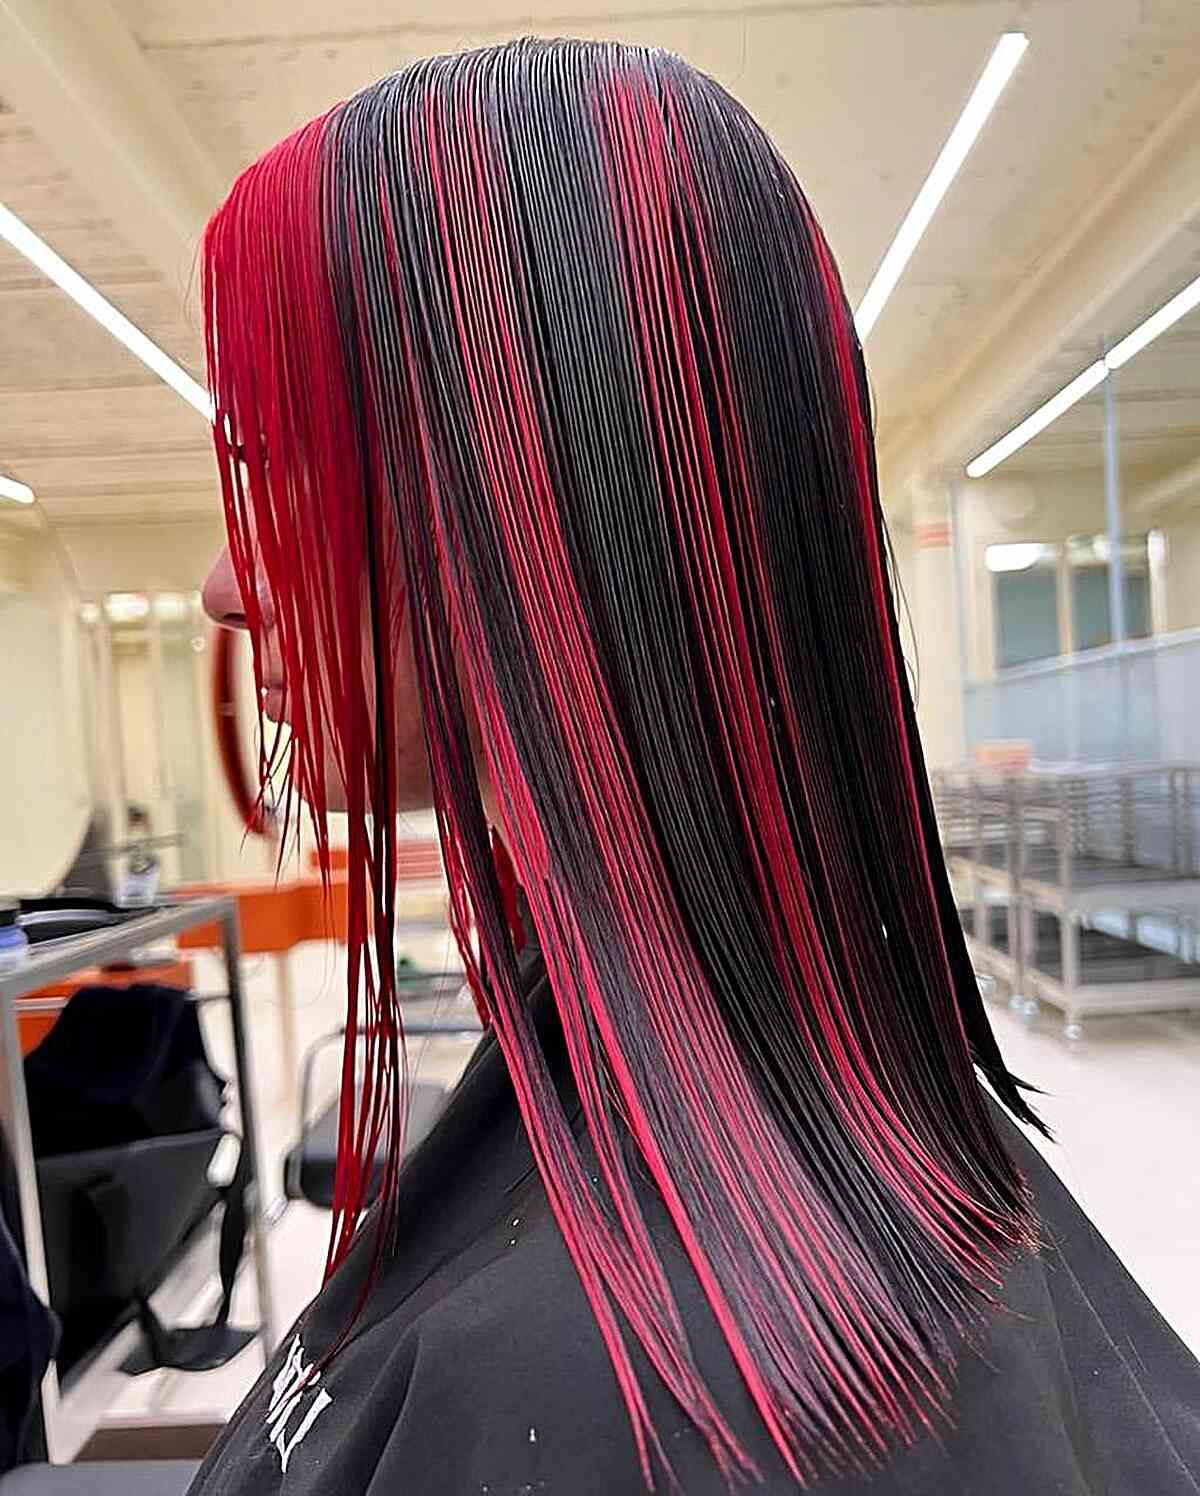 Red Skunk Stripes on Shoulder-Length Jet Black Hair